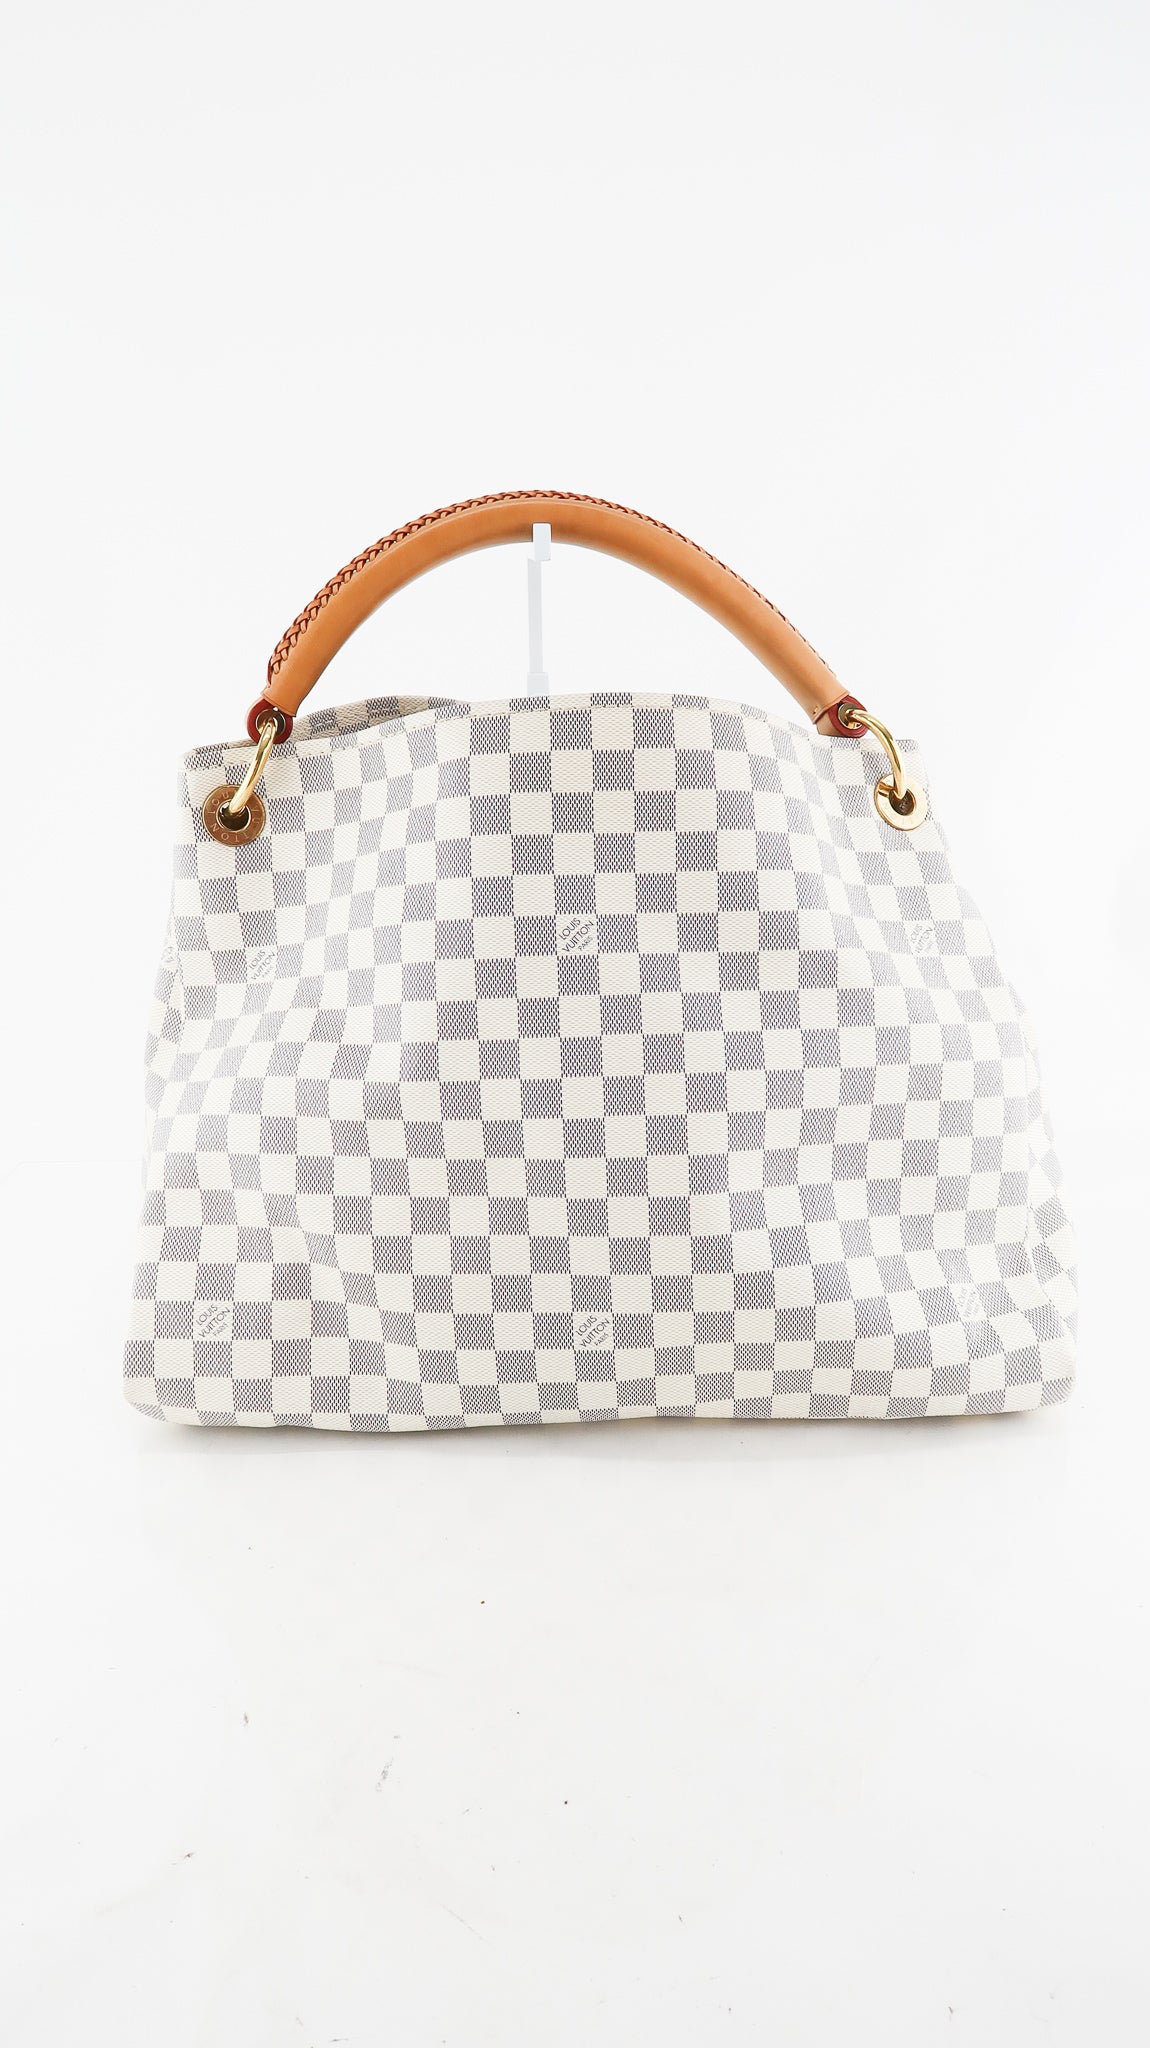 Louis Vuitton Artsy MM Damier Azur Shoulder Bag White